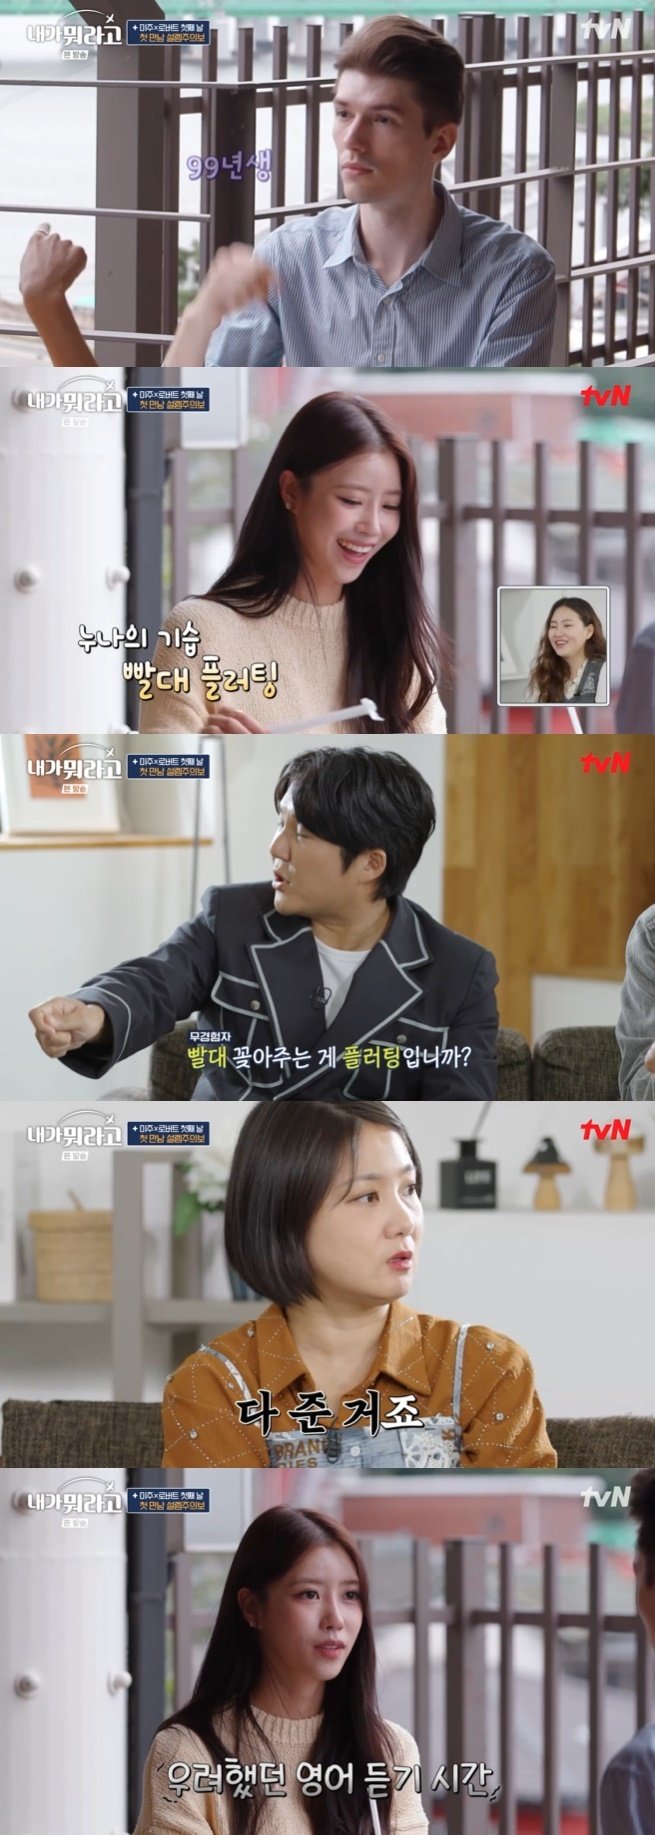 tvN '내가 뭐라고' 캡처